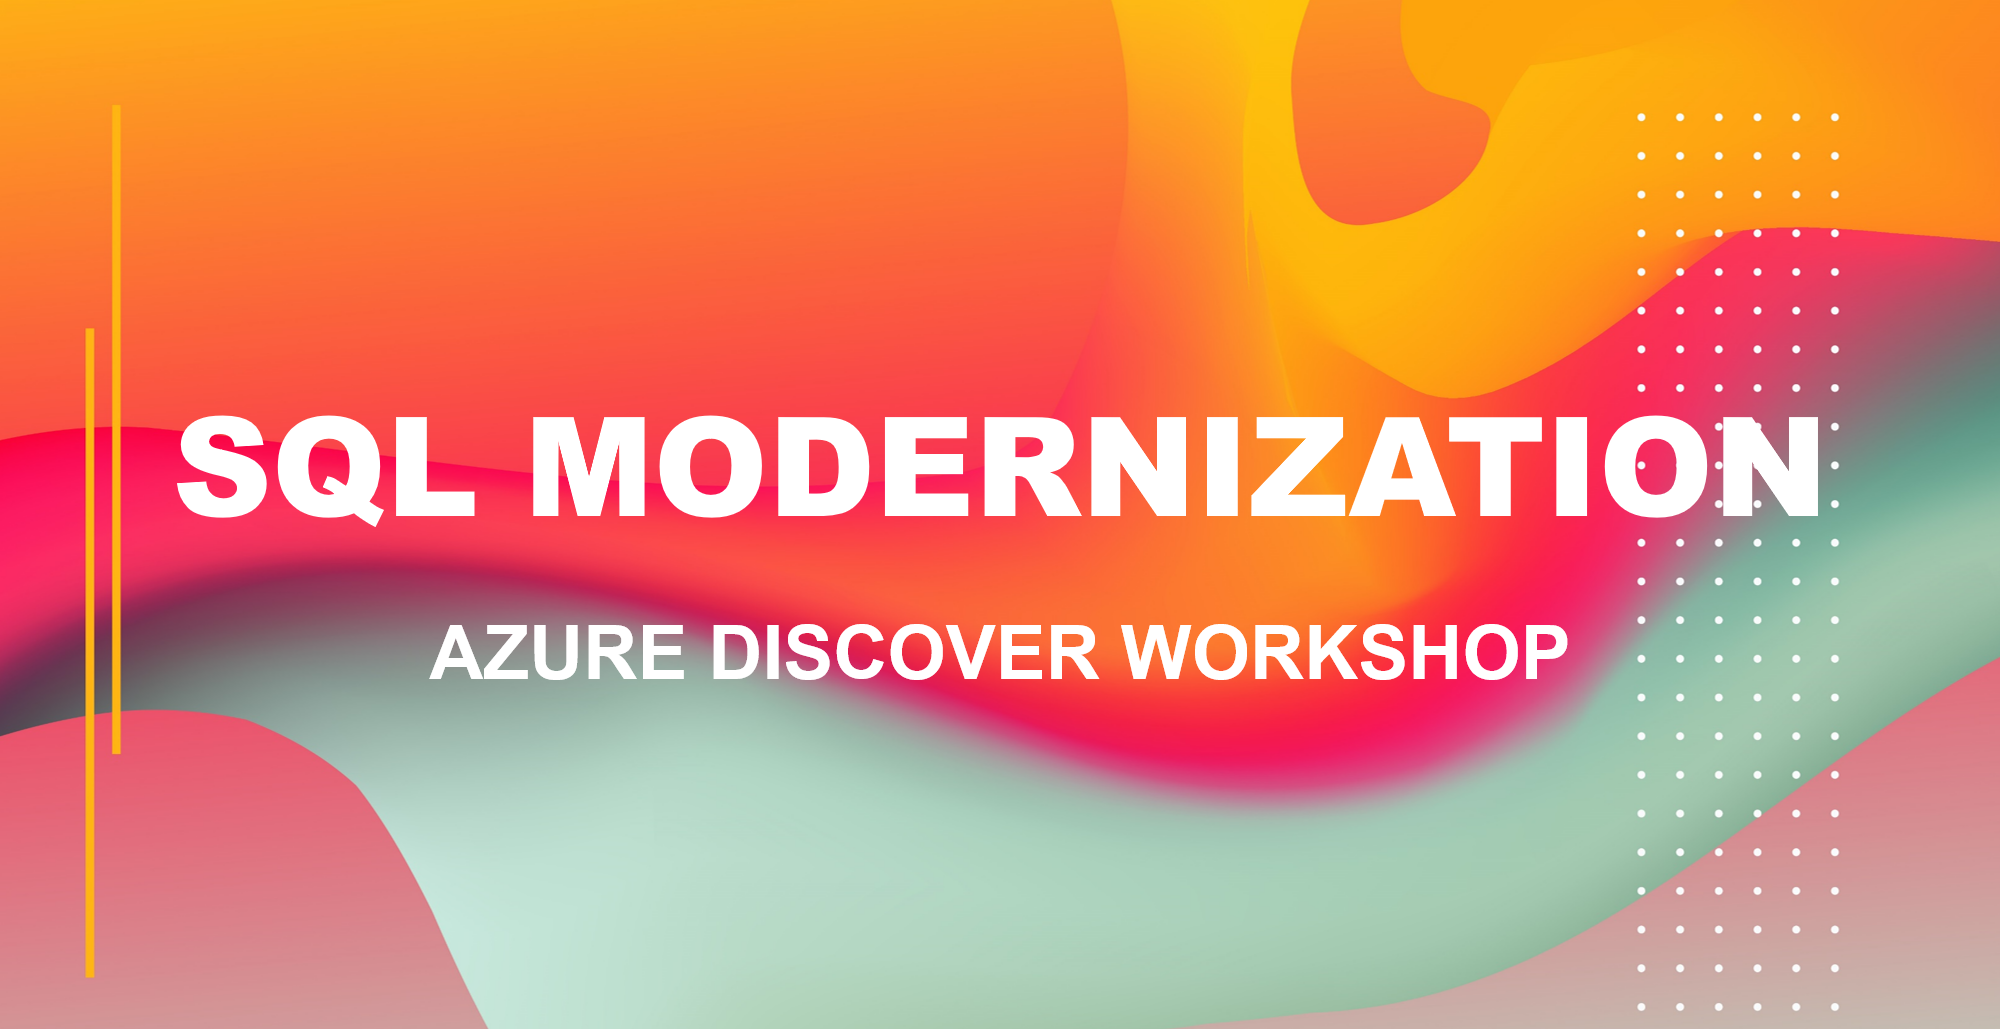 SQL Modernization - Azure Discover Workshop